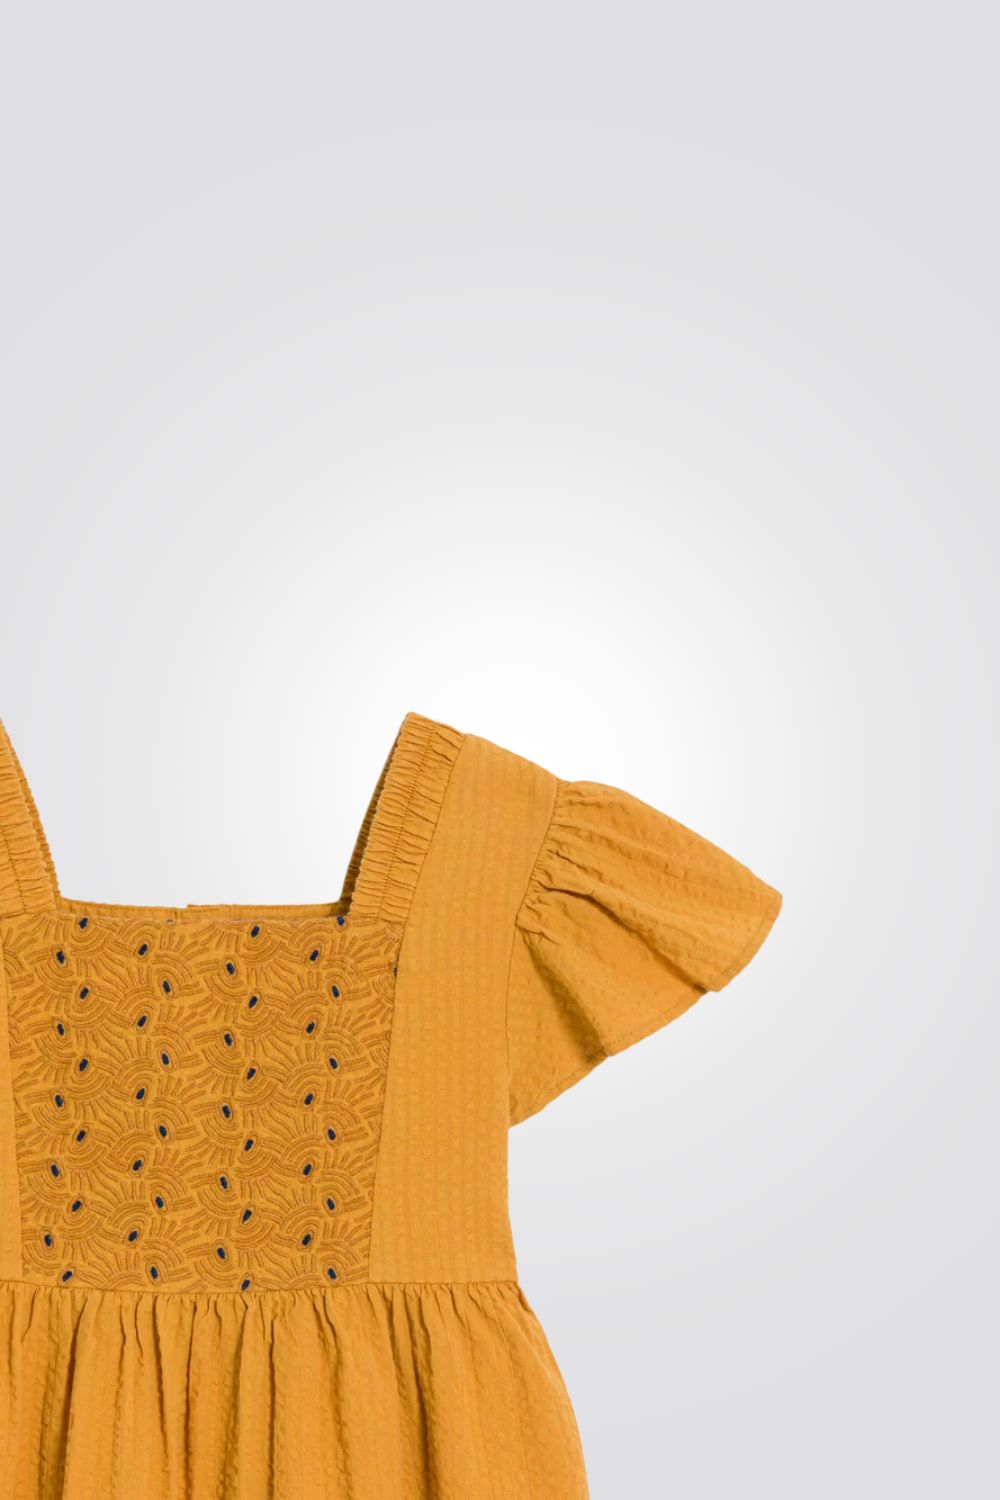 שמלה לילדות בצבע צהוב עם טקסטורת רקמה